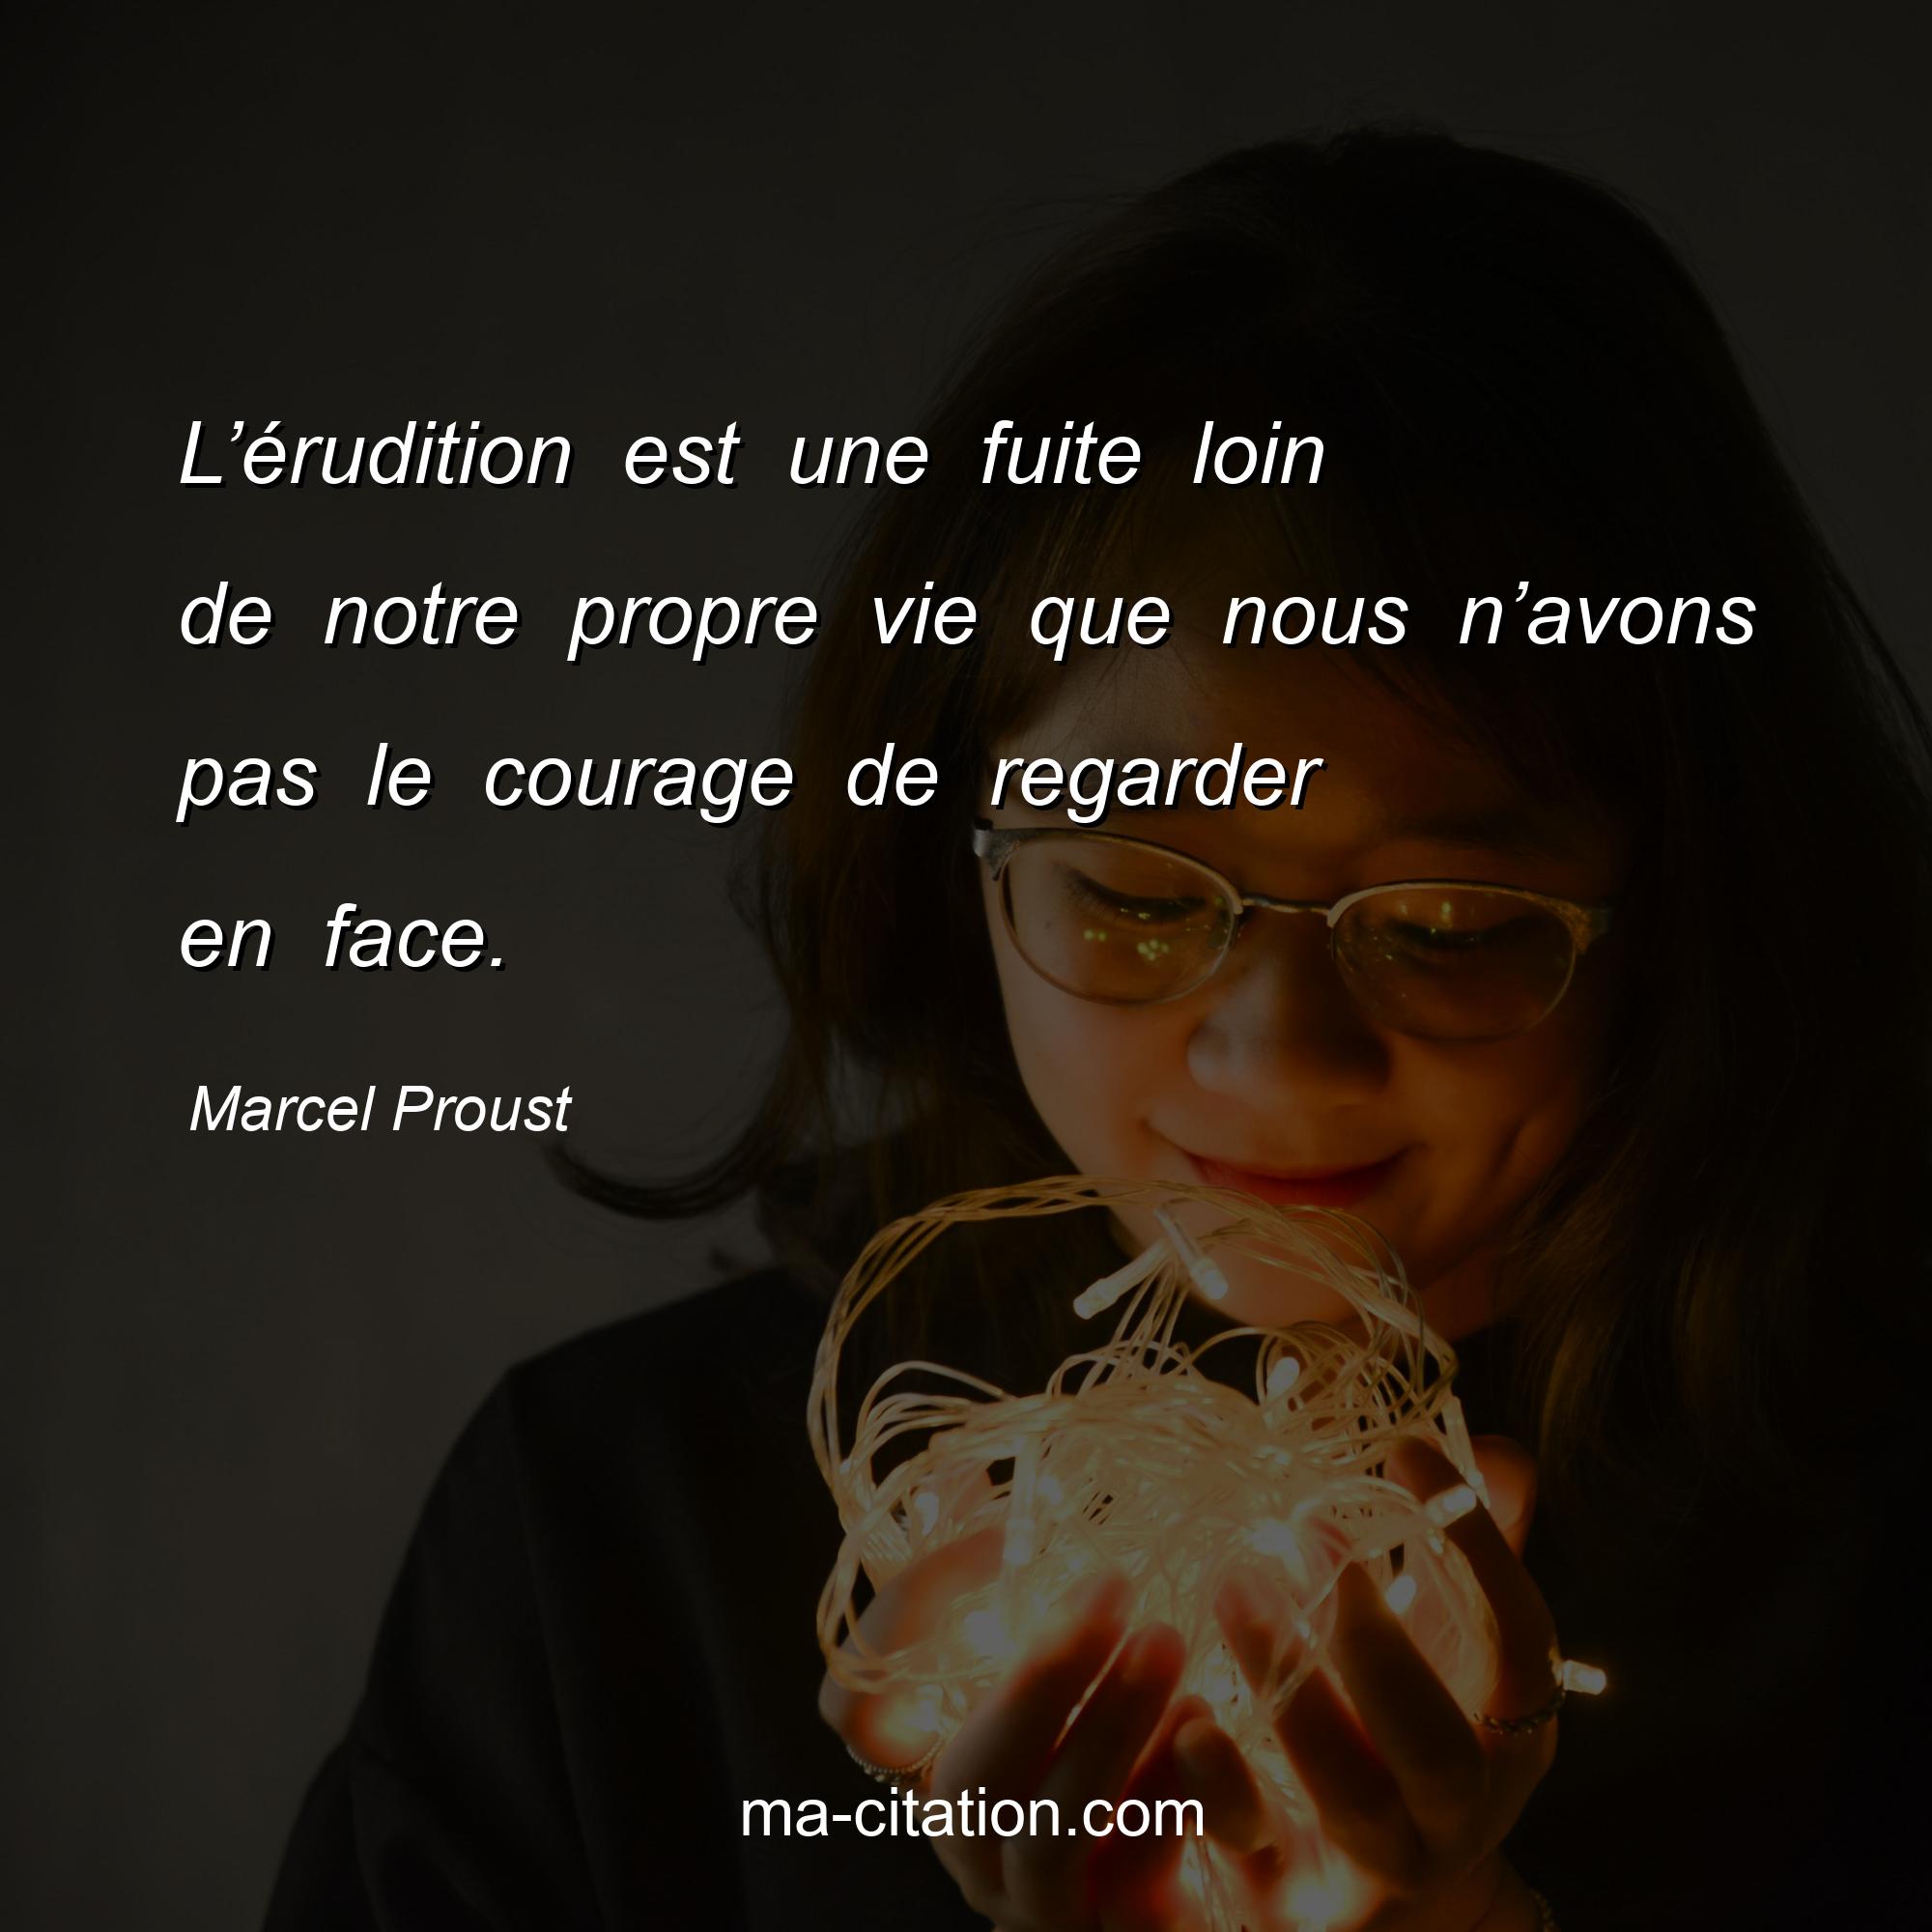 Marcel Proust : L’érudition est une fuite loin de notre propre vie que nous n’avons pas le courage de regarder en face.